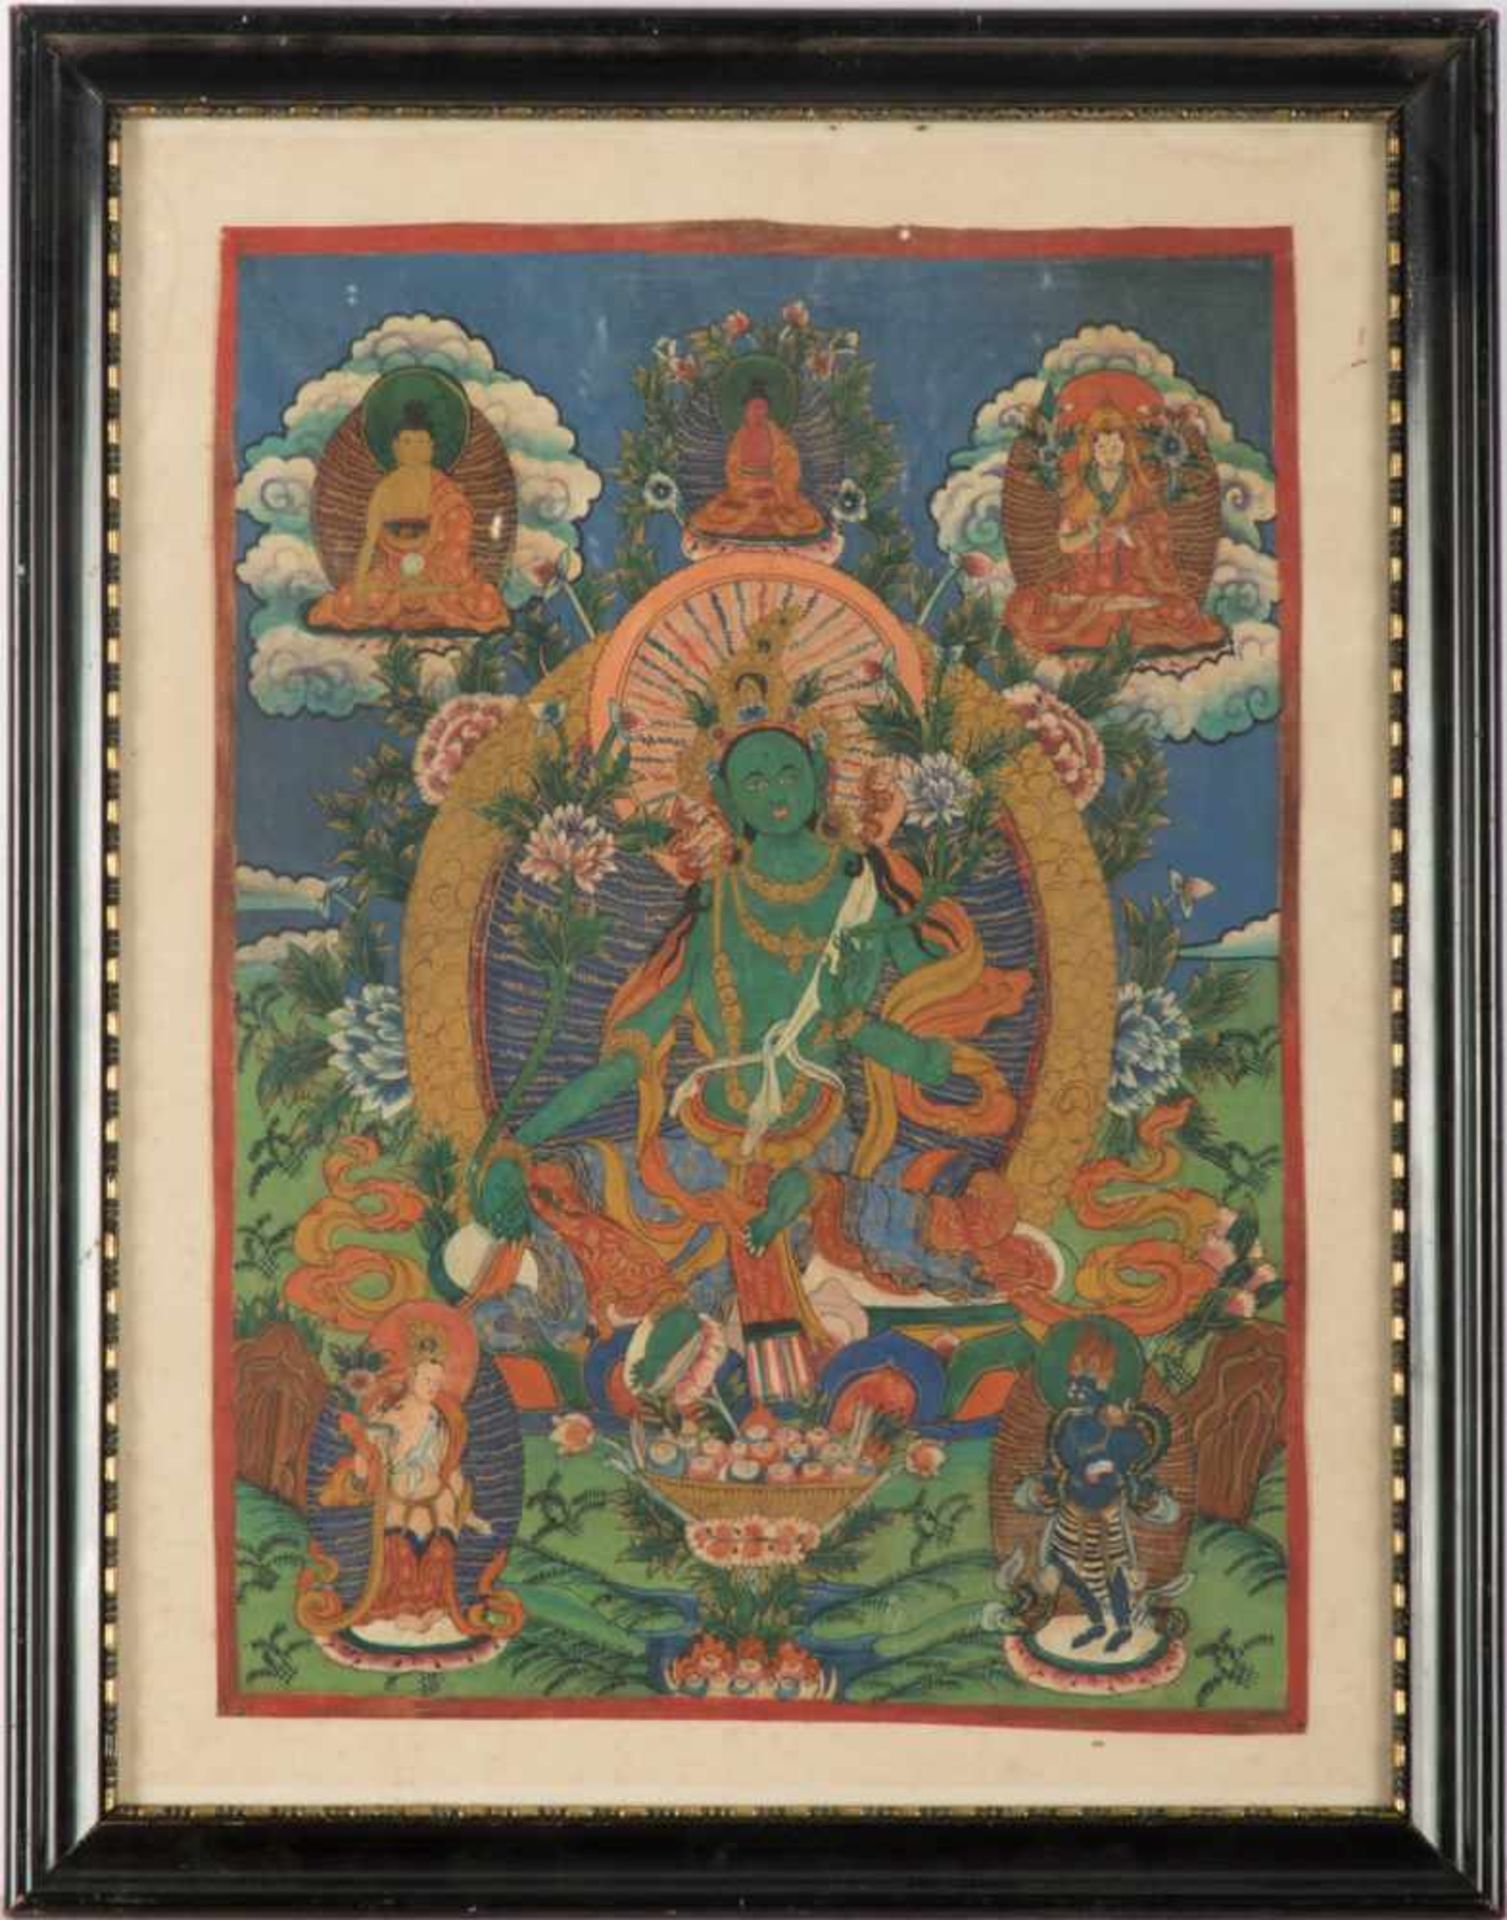 Tibetanischer ThangkaVotivbild mit Gottheiten in Mischtechnik gemalt. Blattgr. 44 x 33 cm. Unter